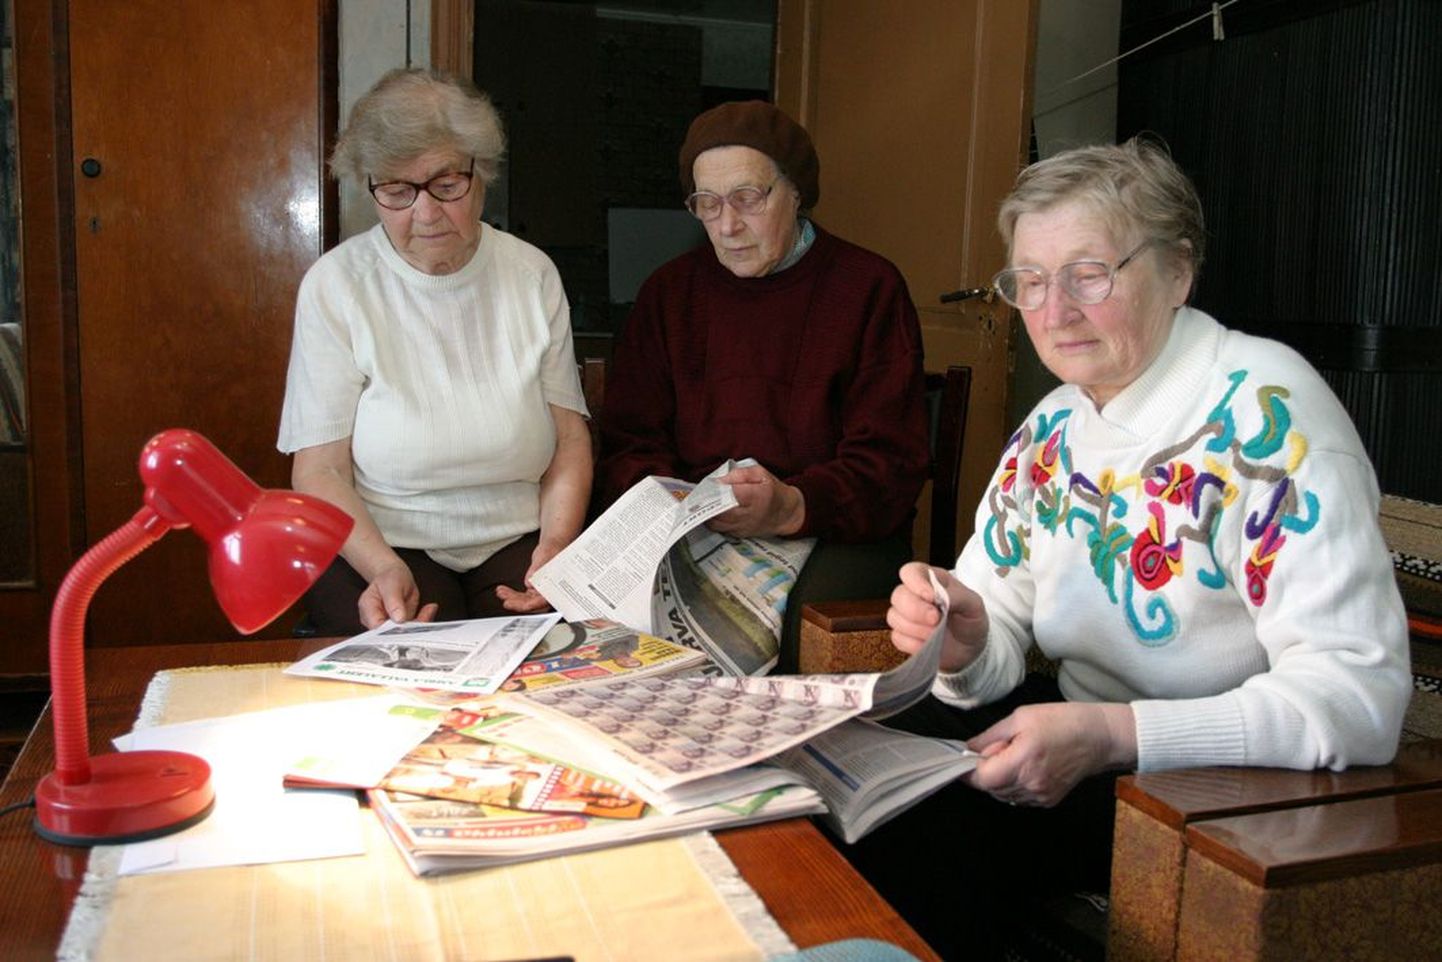 Kukevere küla eakad Leili Kaseväli (vasakult), Aino Tulvik ja Maie Boisen jälgivad murelikult ajalehti, lootes leida uudist, mis tulevikku heledamates toonides näitaks. Pilt on illustratiivne.